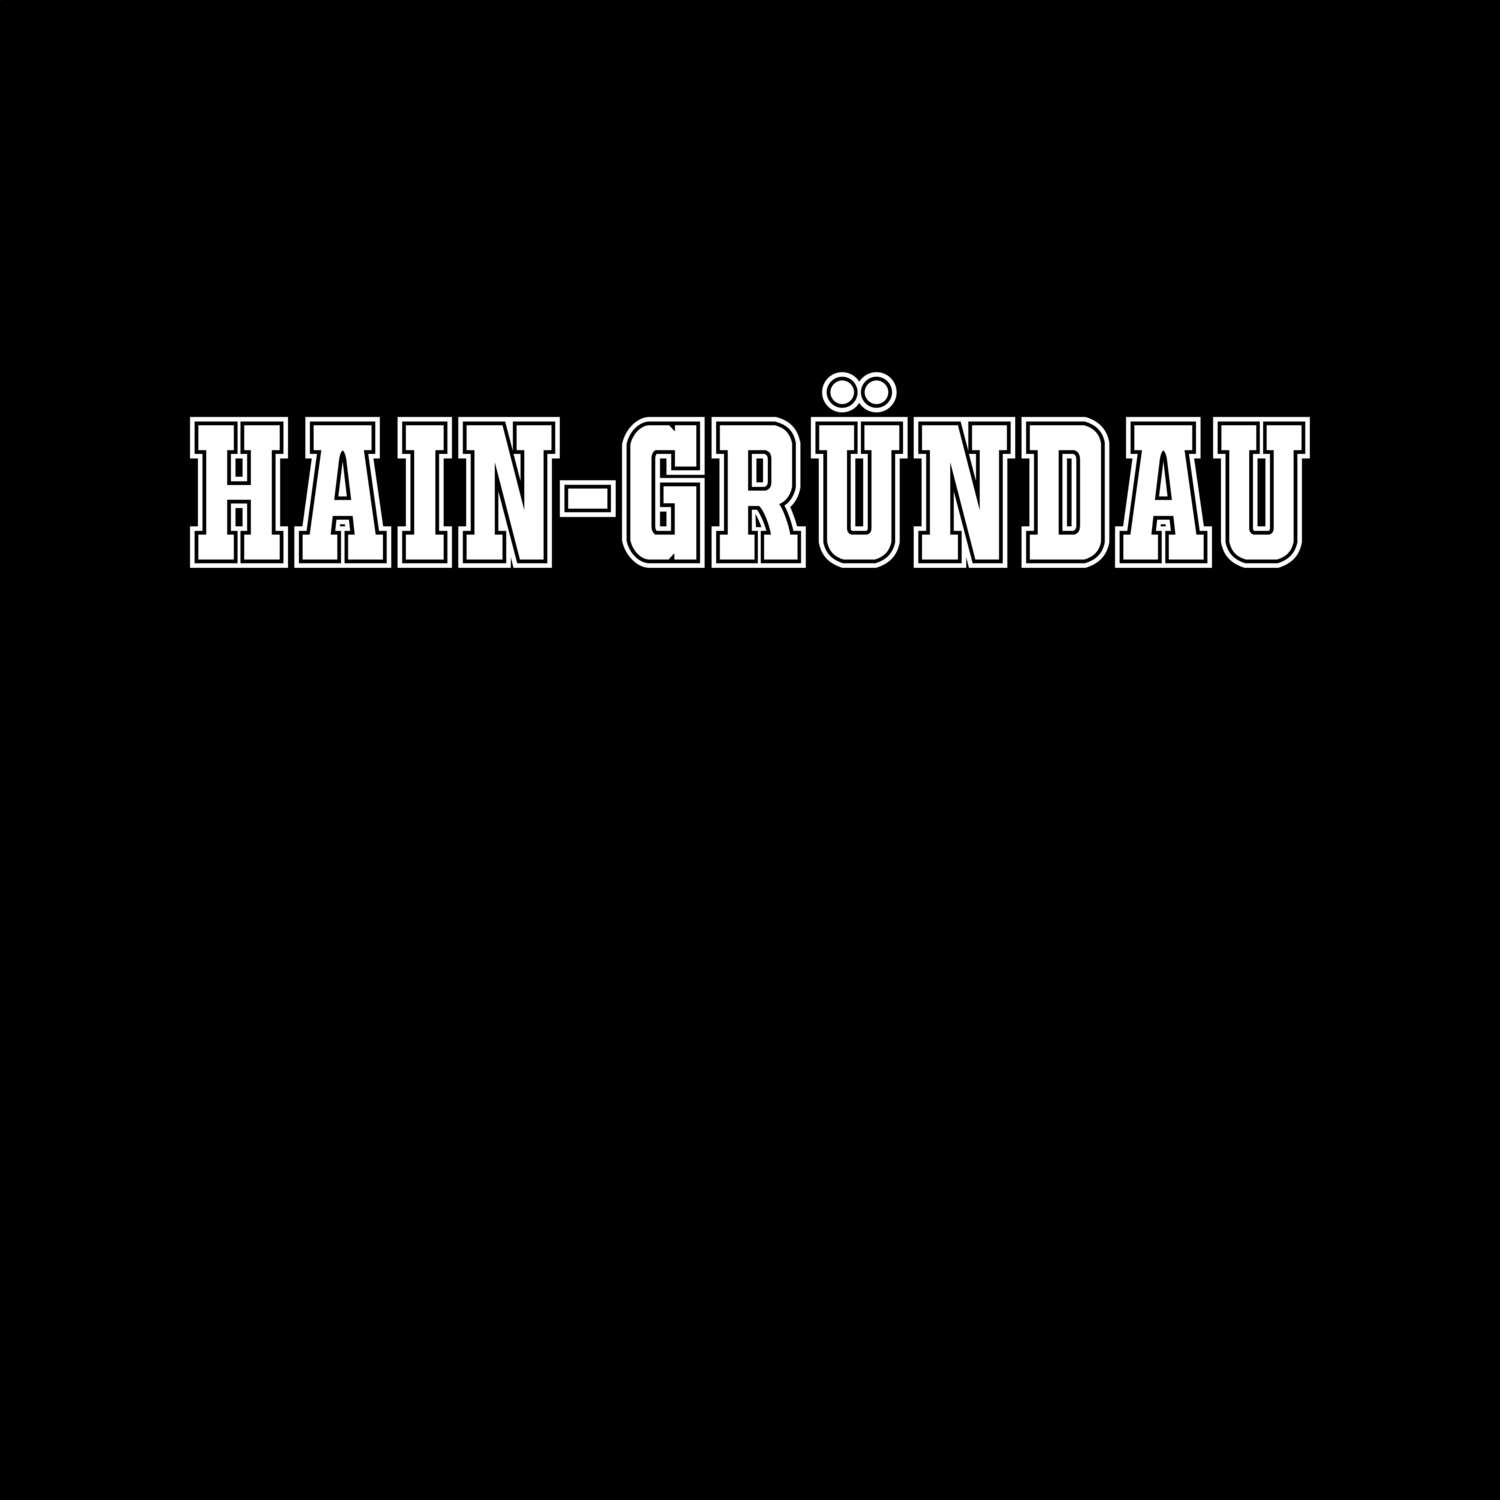 Hain-Gründau T-Shirt »Classic«